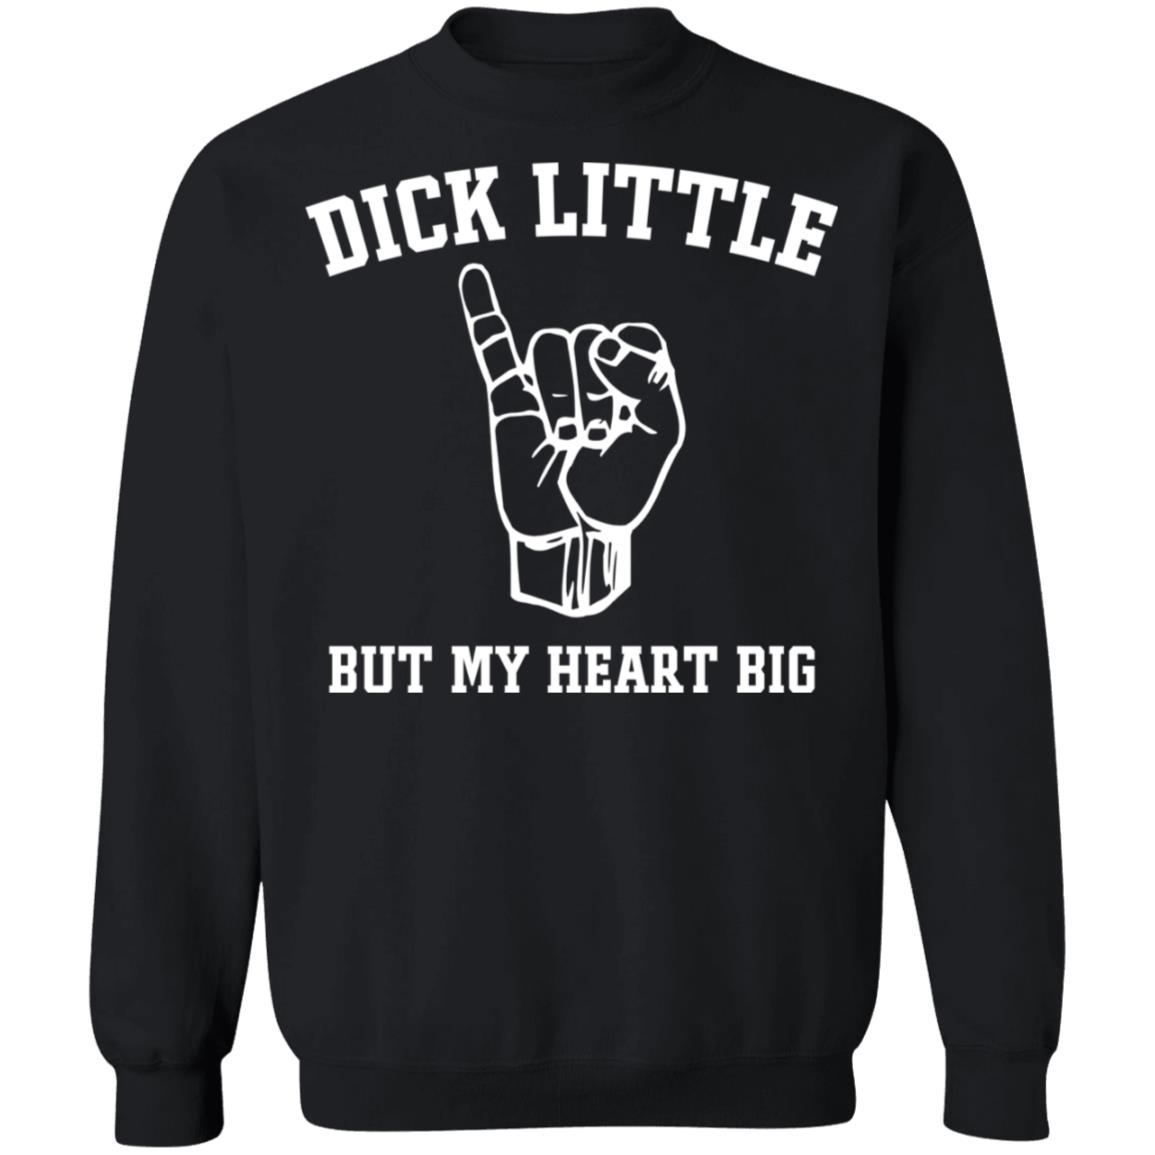 Dick little but my heart big shirt, hoodie, long sleeve